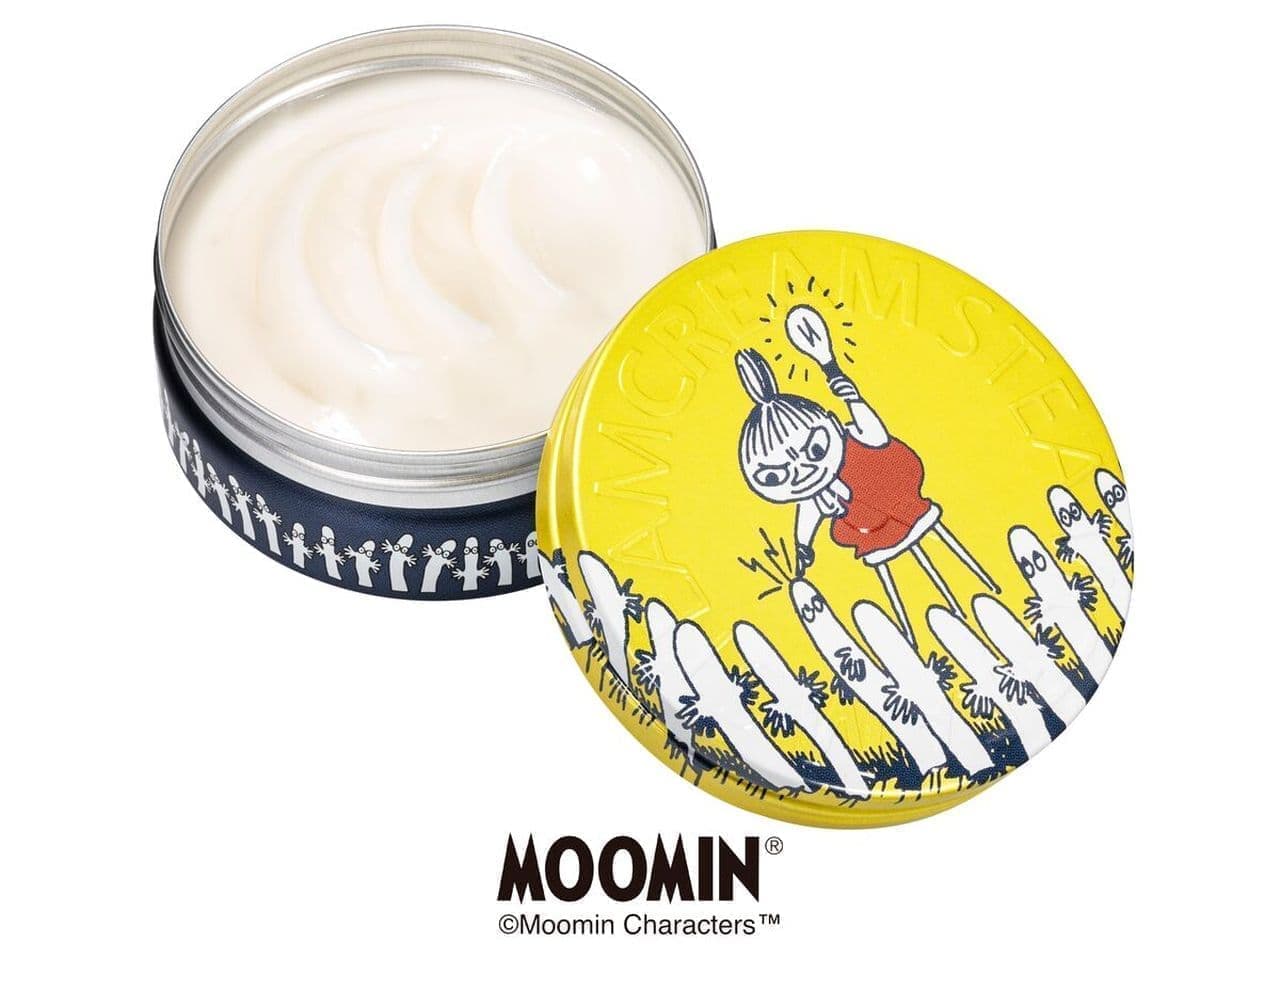 Steam Cream's Moomin Design "Electrified Gnoronoro"